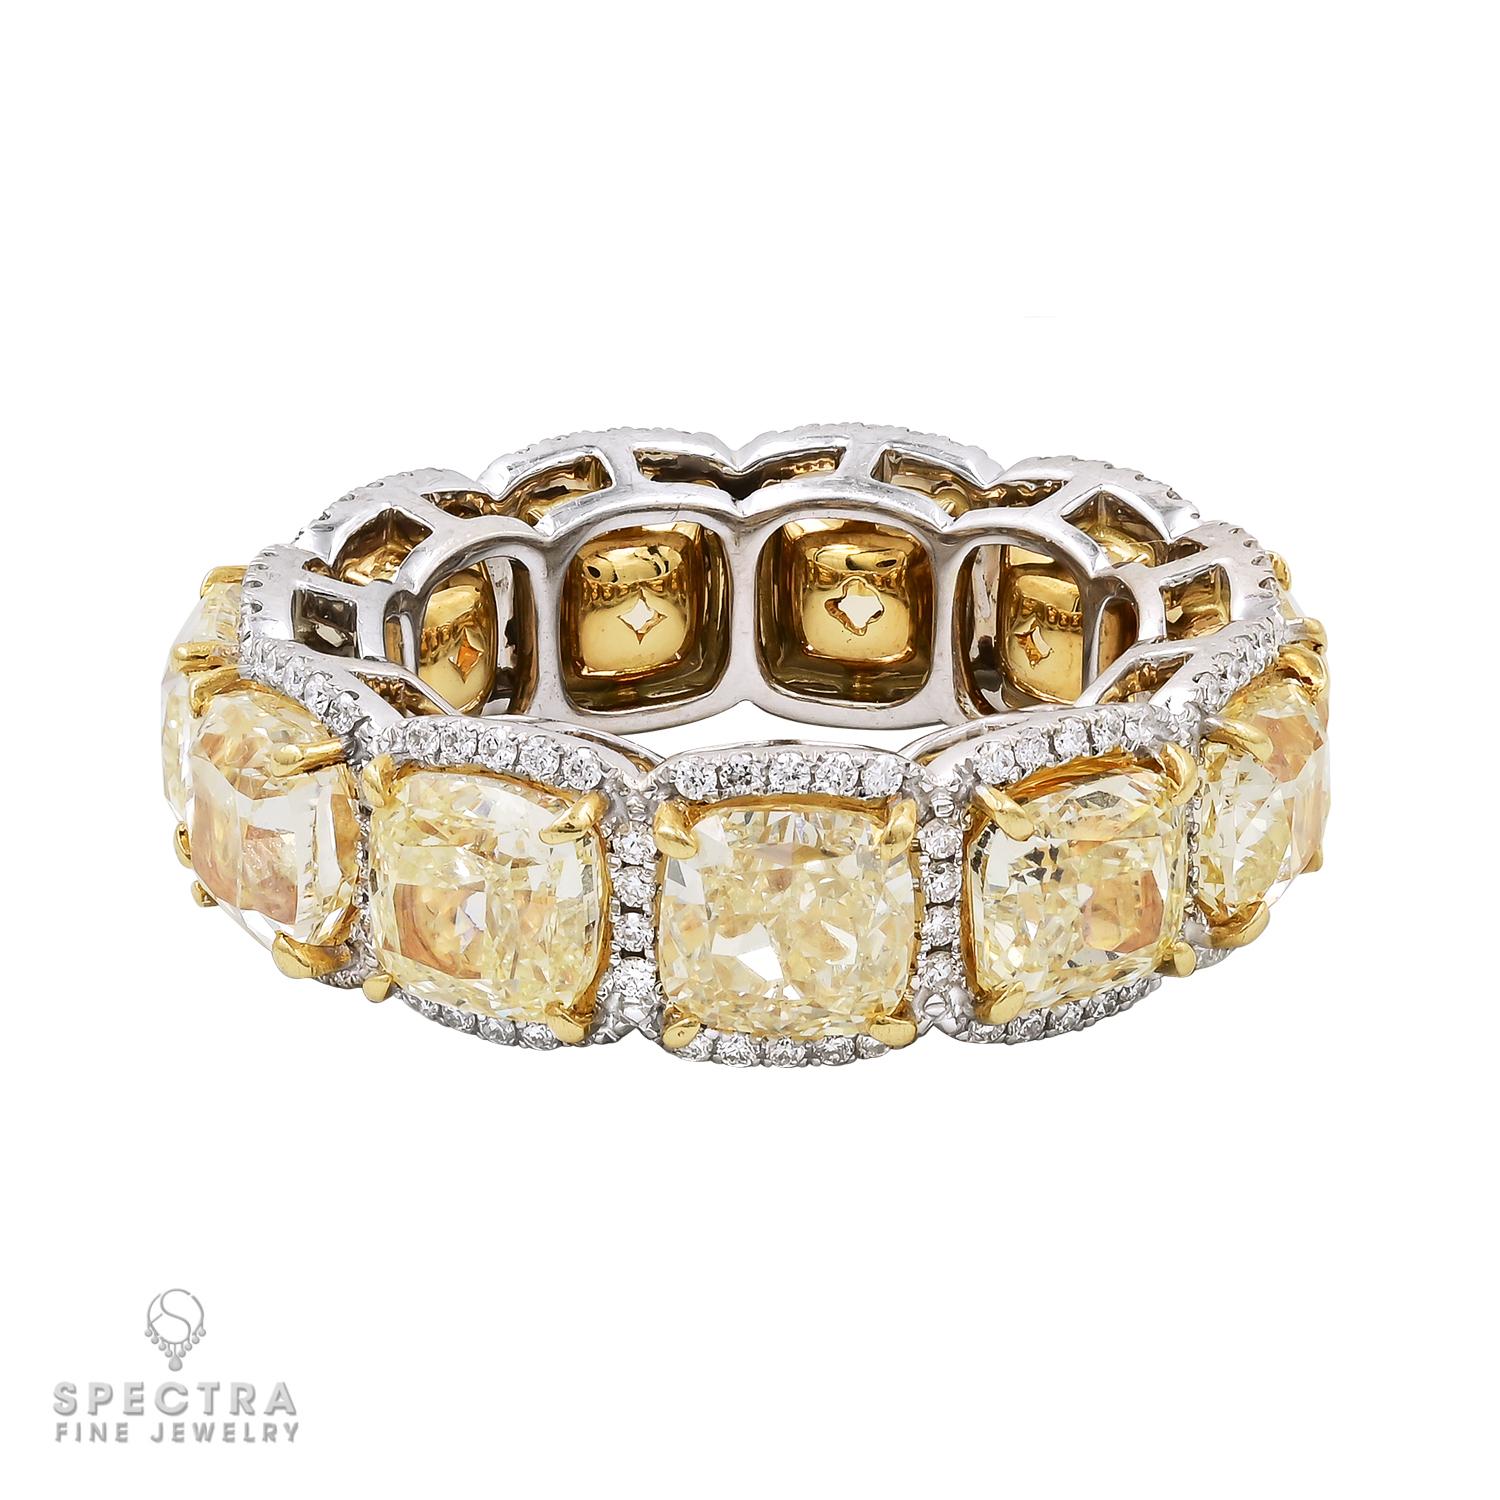 La bague Eternity Band en diamant jaune fantaisie coussin de 12,04cts de Spectra Fine Jewelry est une pièce exquise et captivante qui respire l'élégance et le luxe. Réalisée avec une attention méticuleuse aux détails, cette bague met en valeur 11